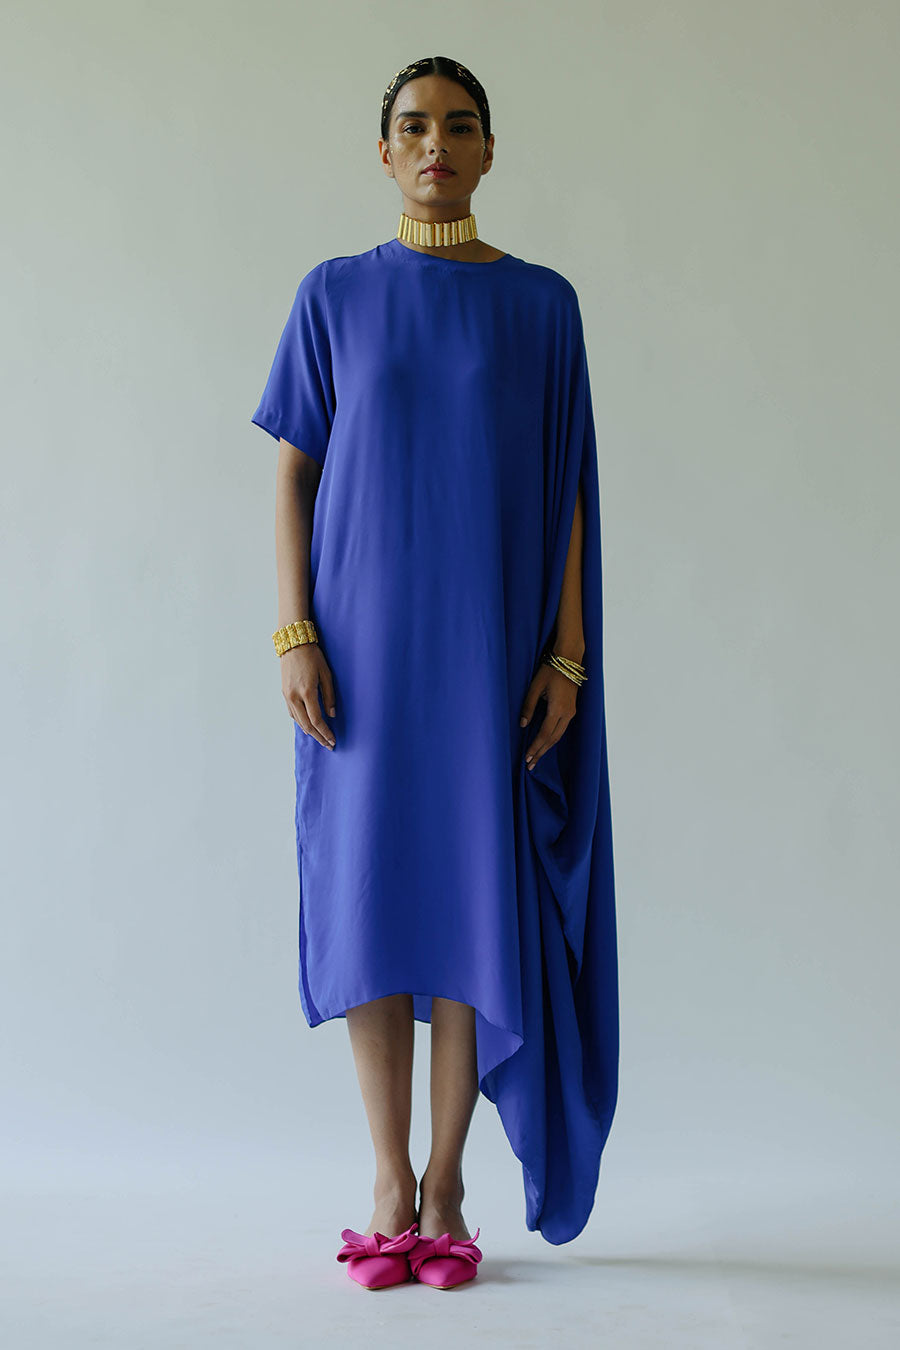 Blue Klien Claire Dress